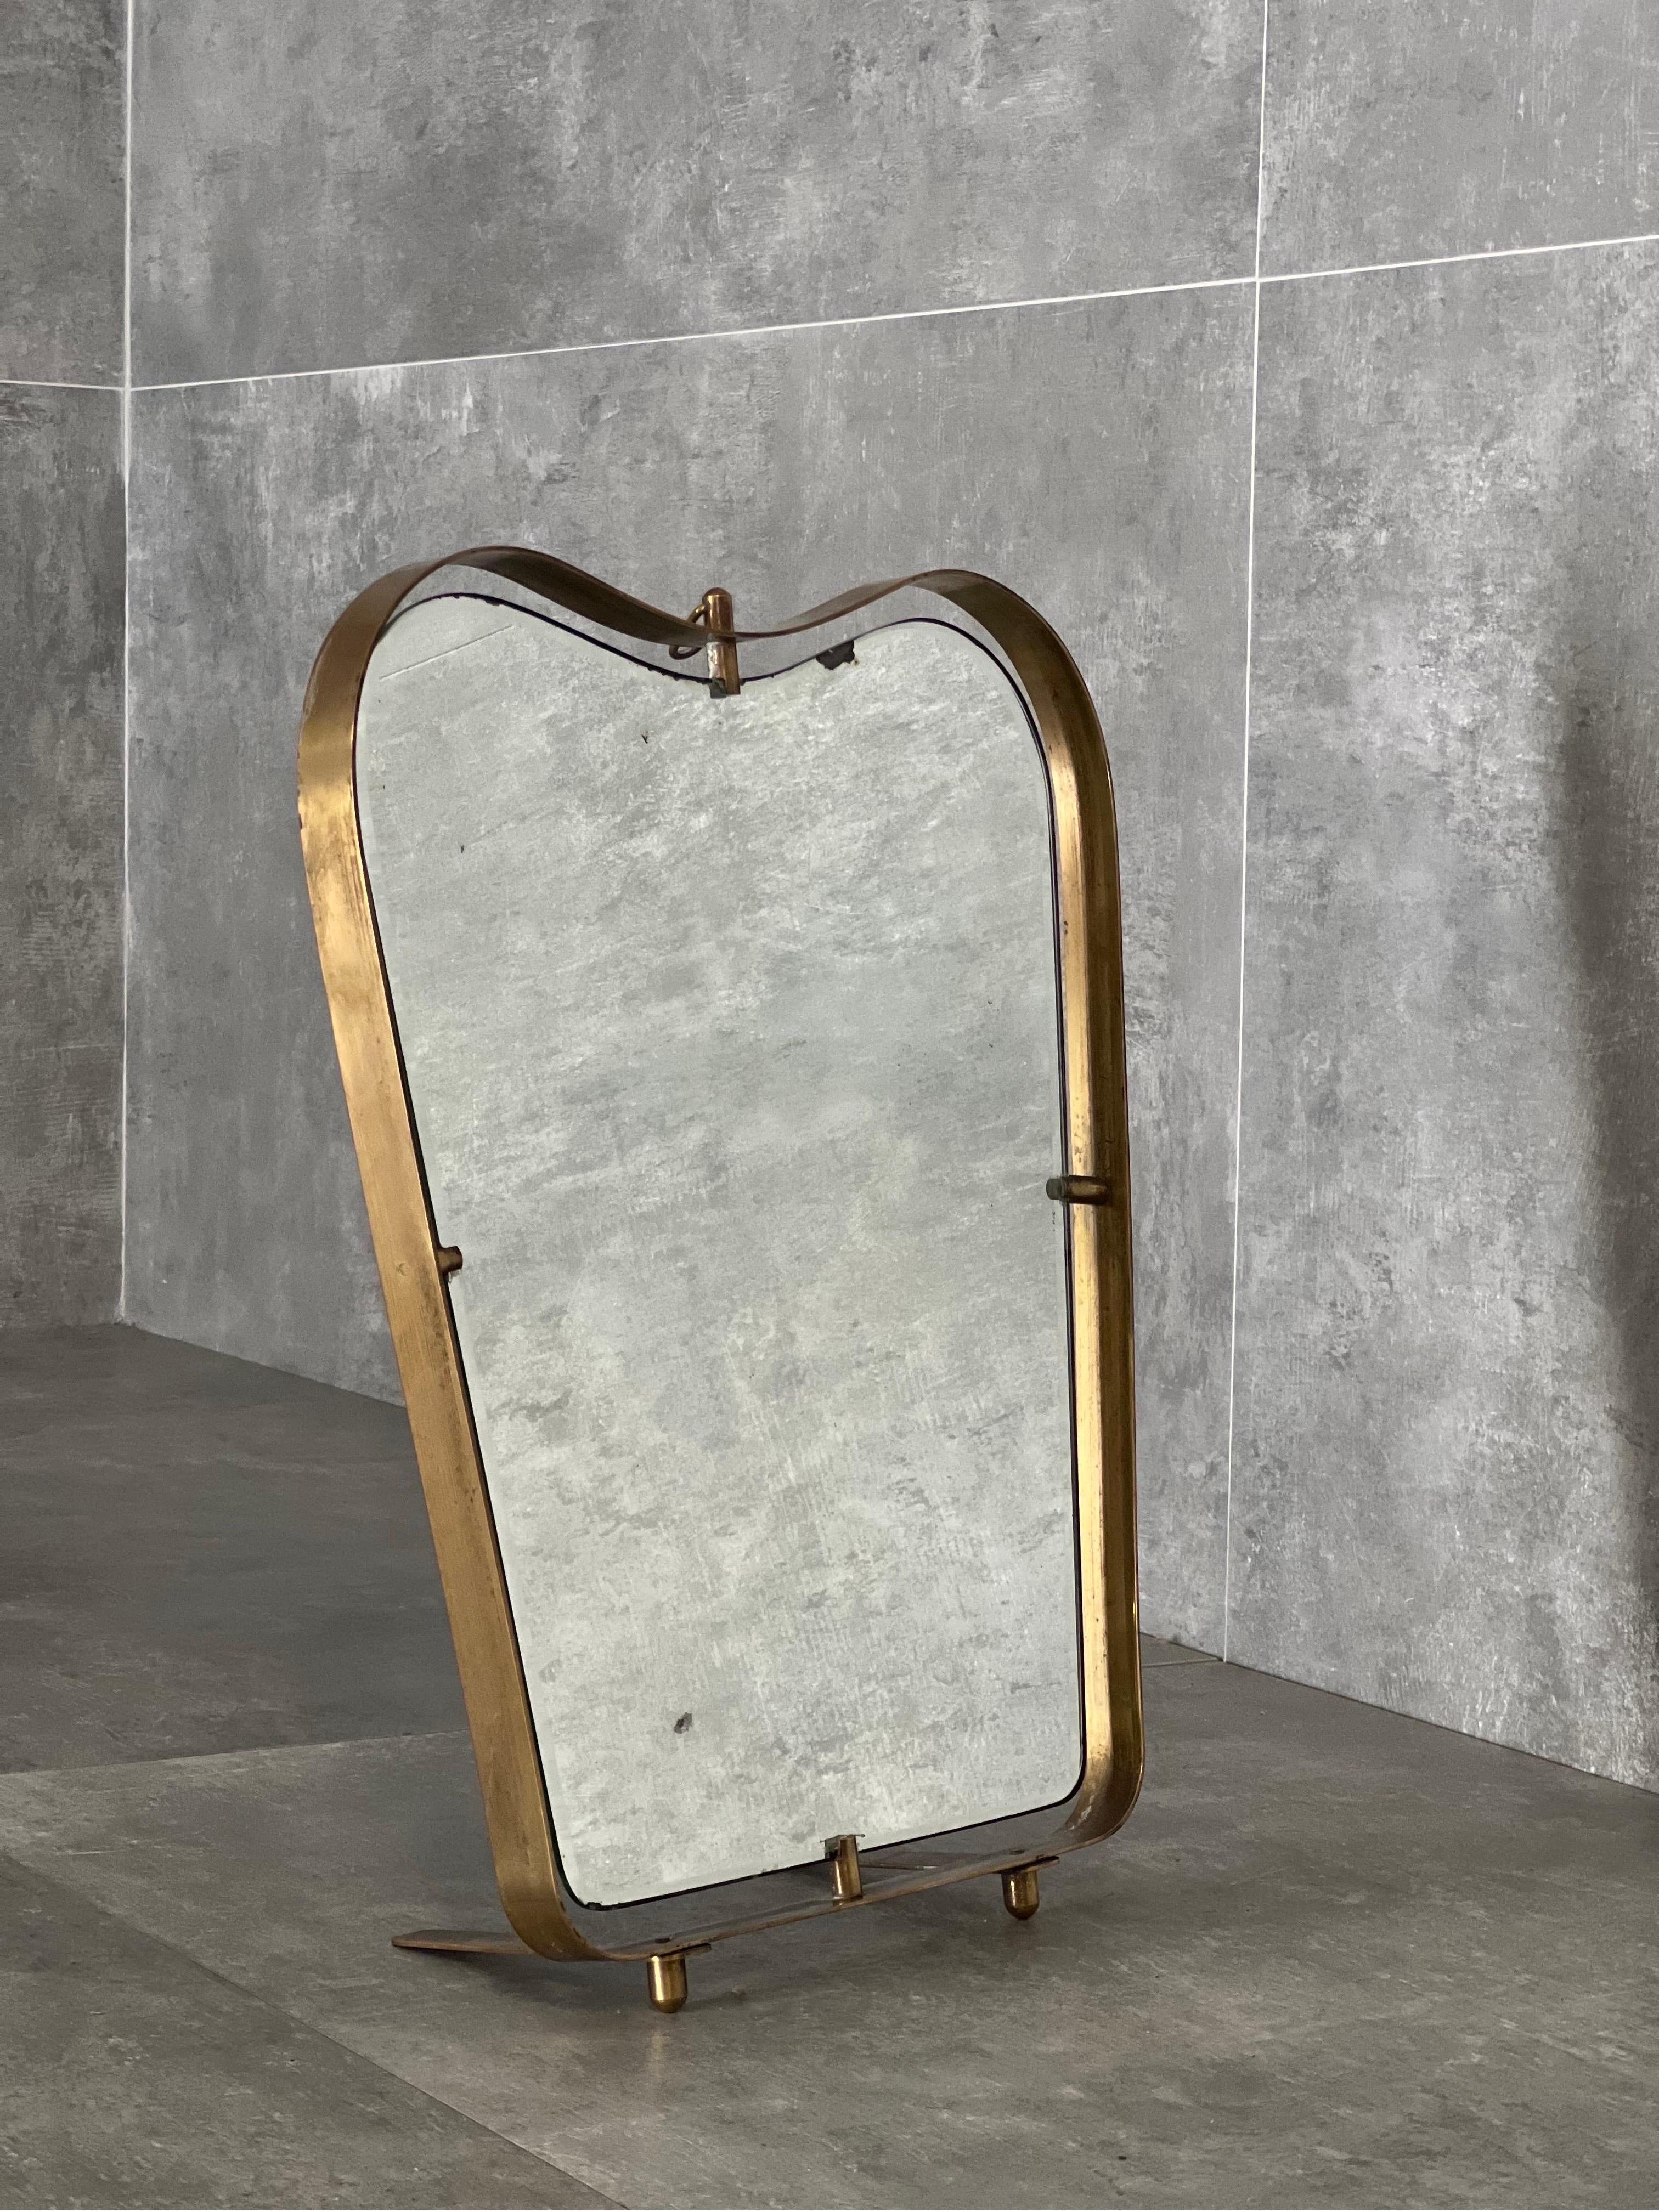 1950er Jahre Spiegel mit Messingrahmen Kleidung. zu Fontana Arte. Dieser Spiegel kann sowohl an der Wand hängen als auch als Tischspiegel verwendet werden, dank der verstellbaren Messingbeine am Sockel und dem Messingring zum Aufhängen an der